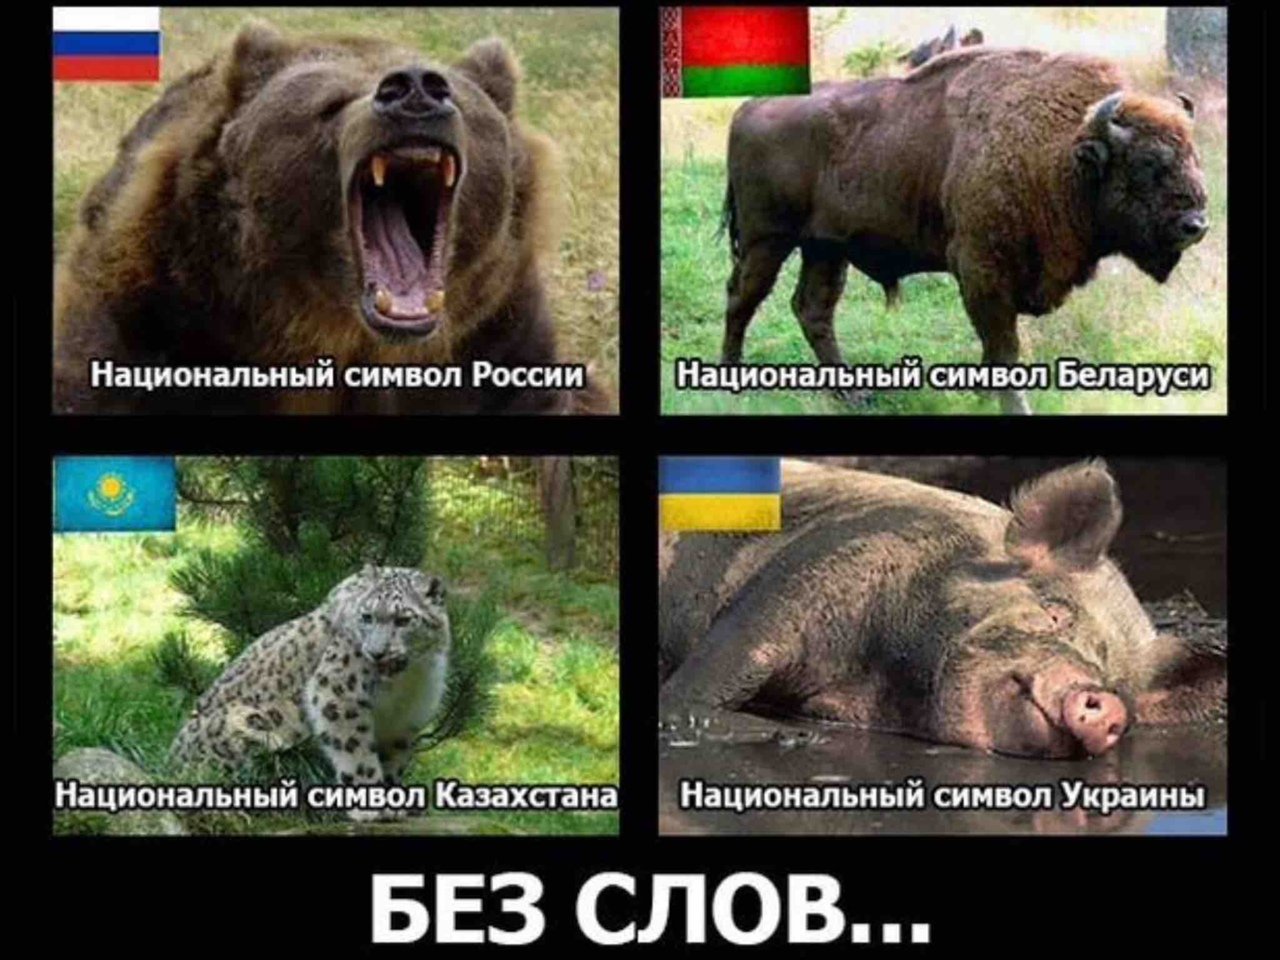 Русский язык свиней. Символ Украины животного. Свинья это национальный символ Украины. Национальное животное УК. Симфол украинс животное.